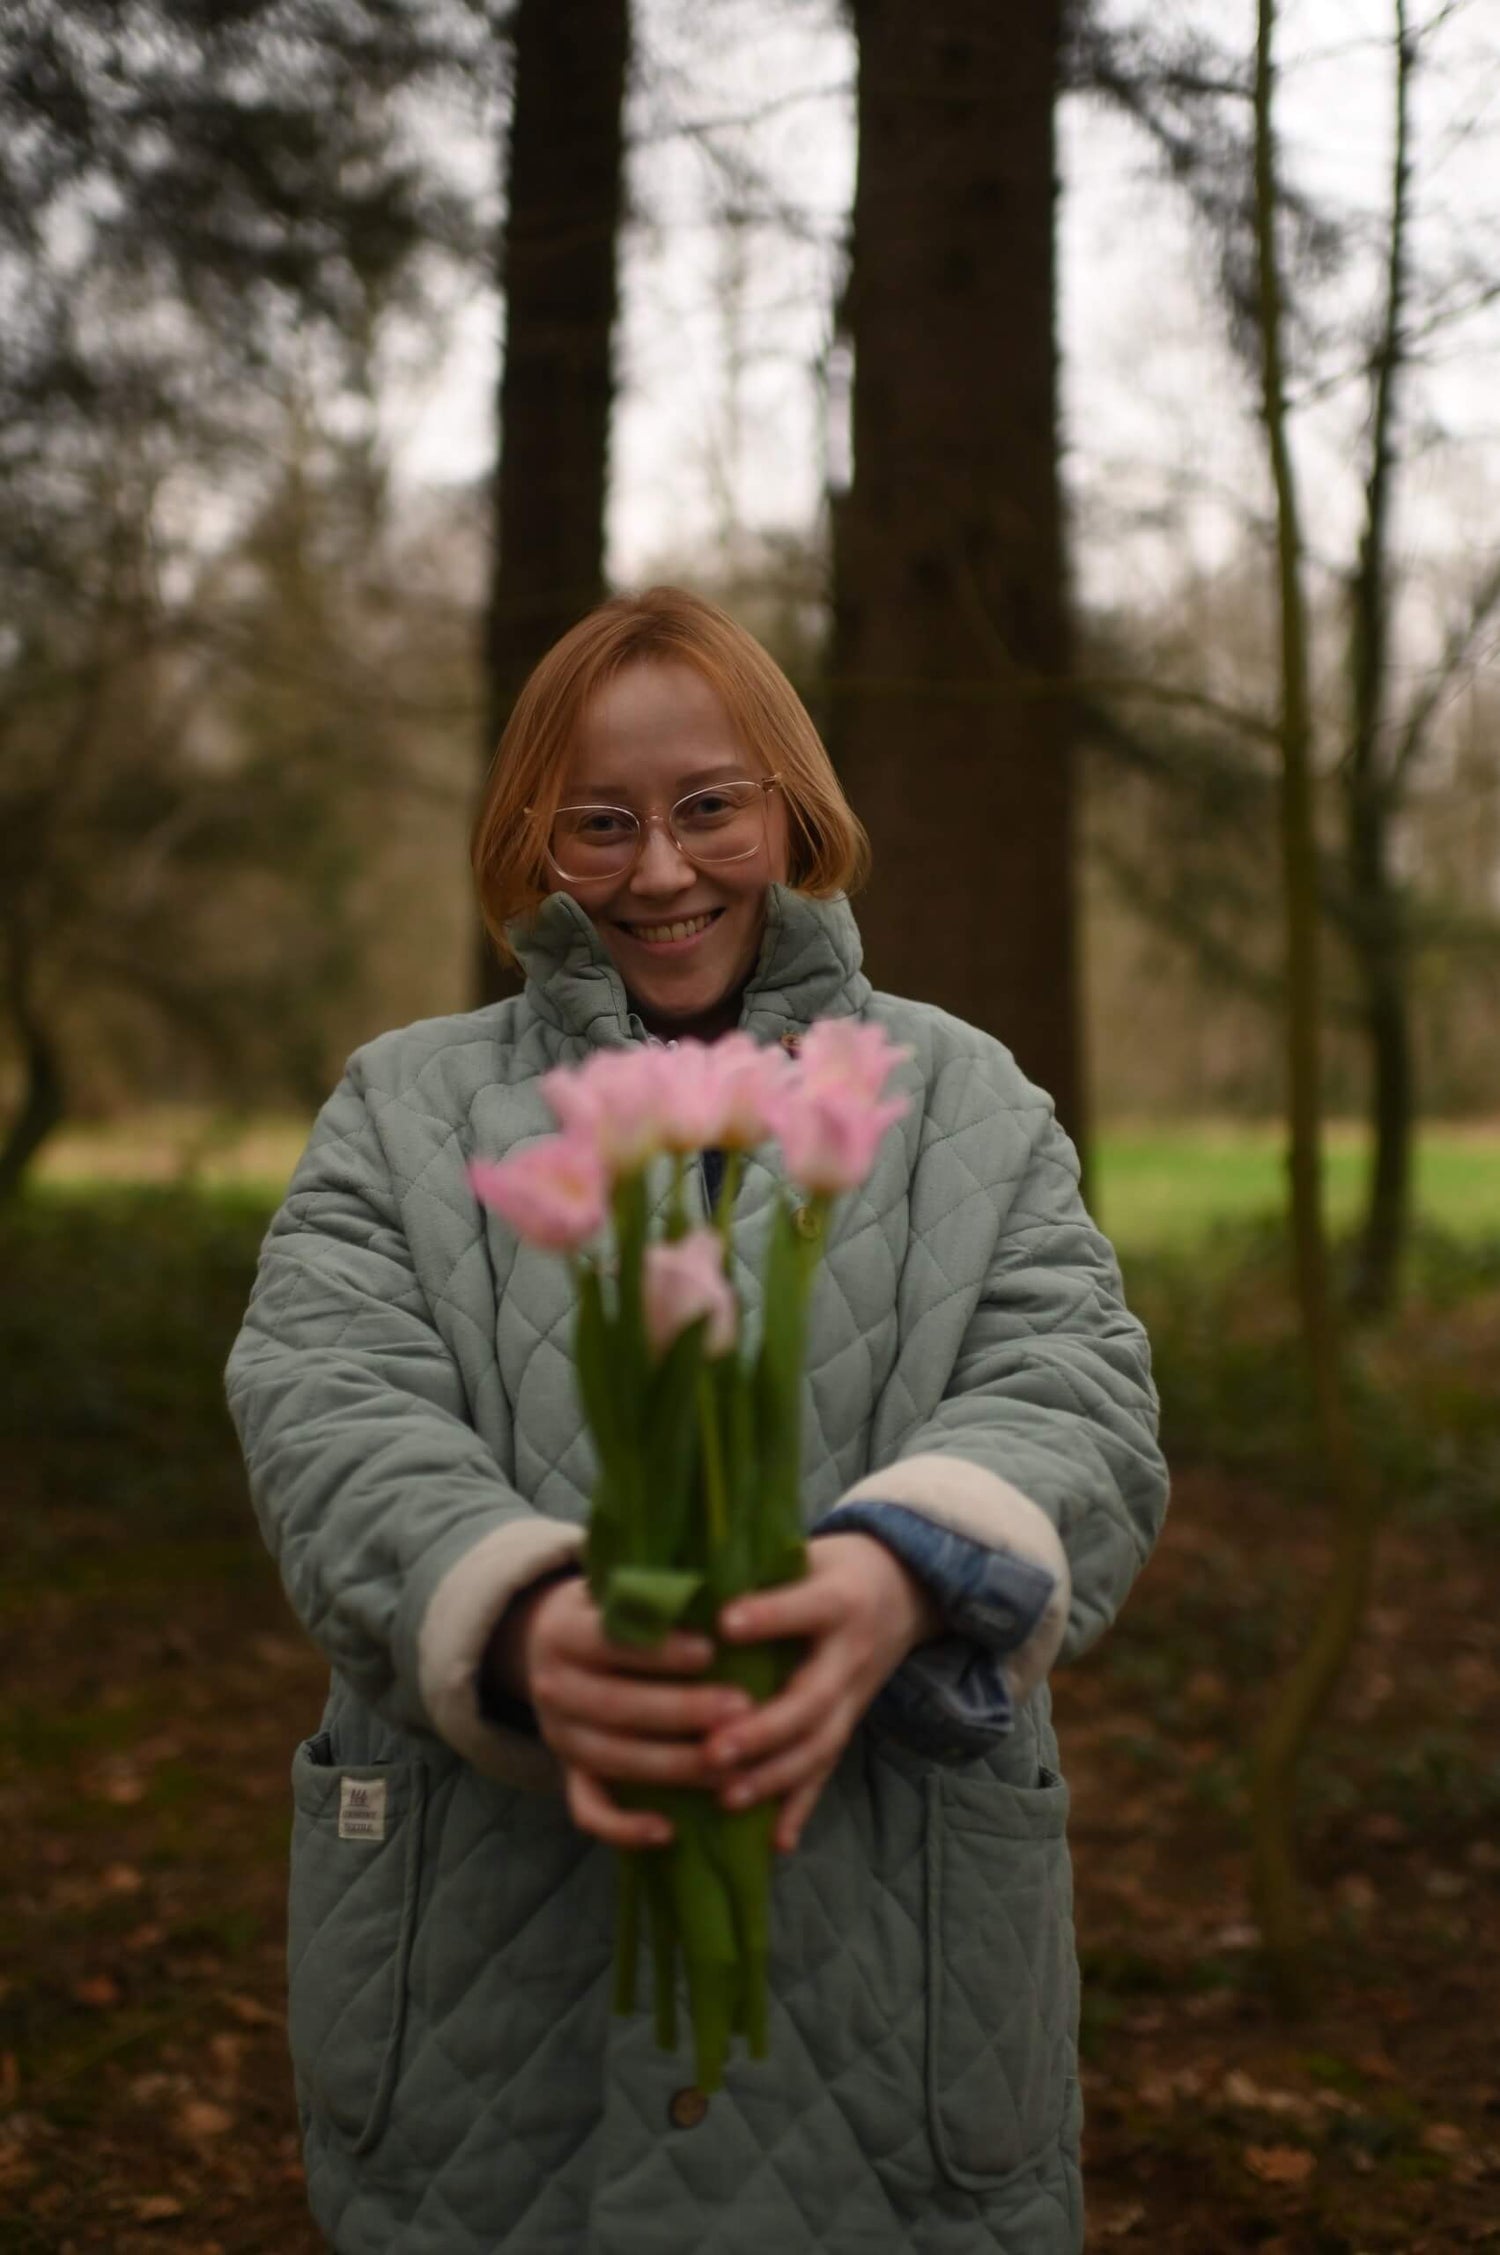 Eine Frau schenkt Blumen und lächelt freundlich